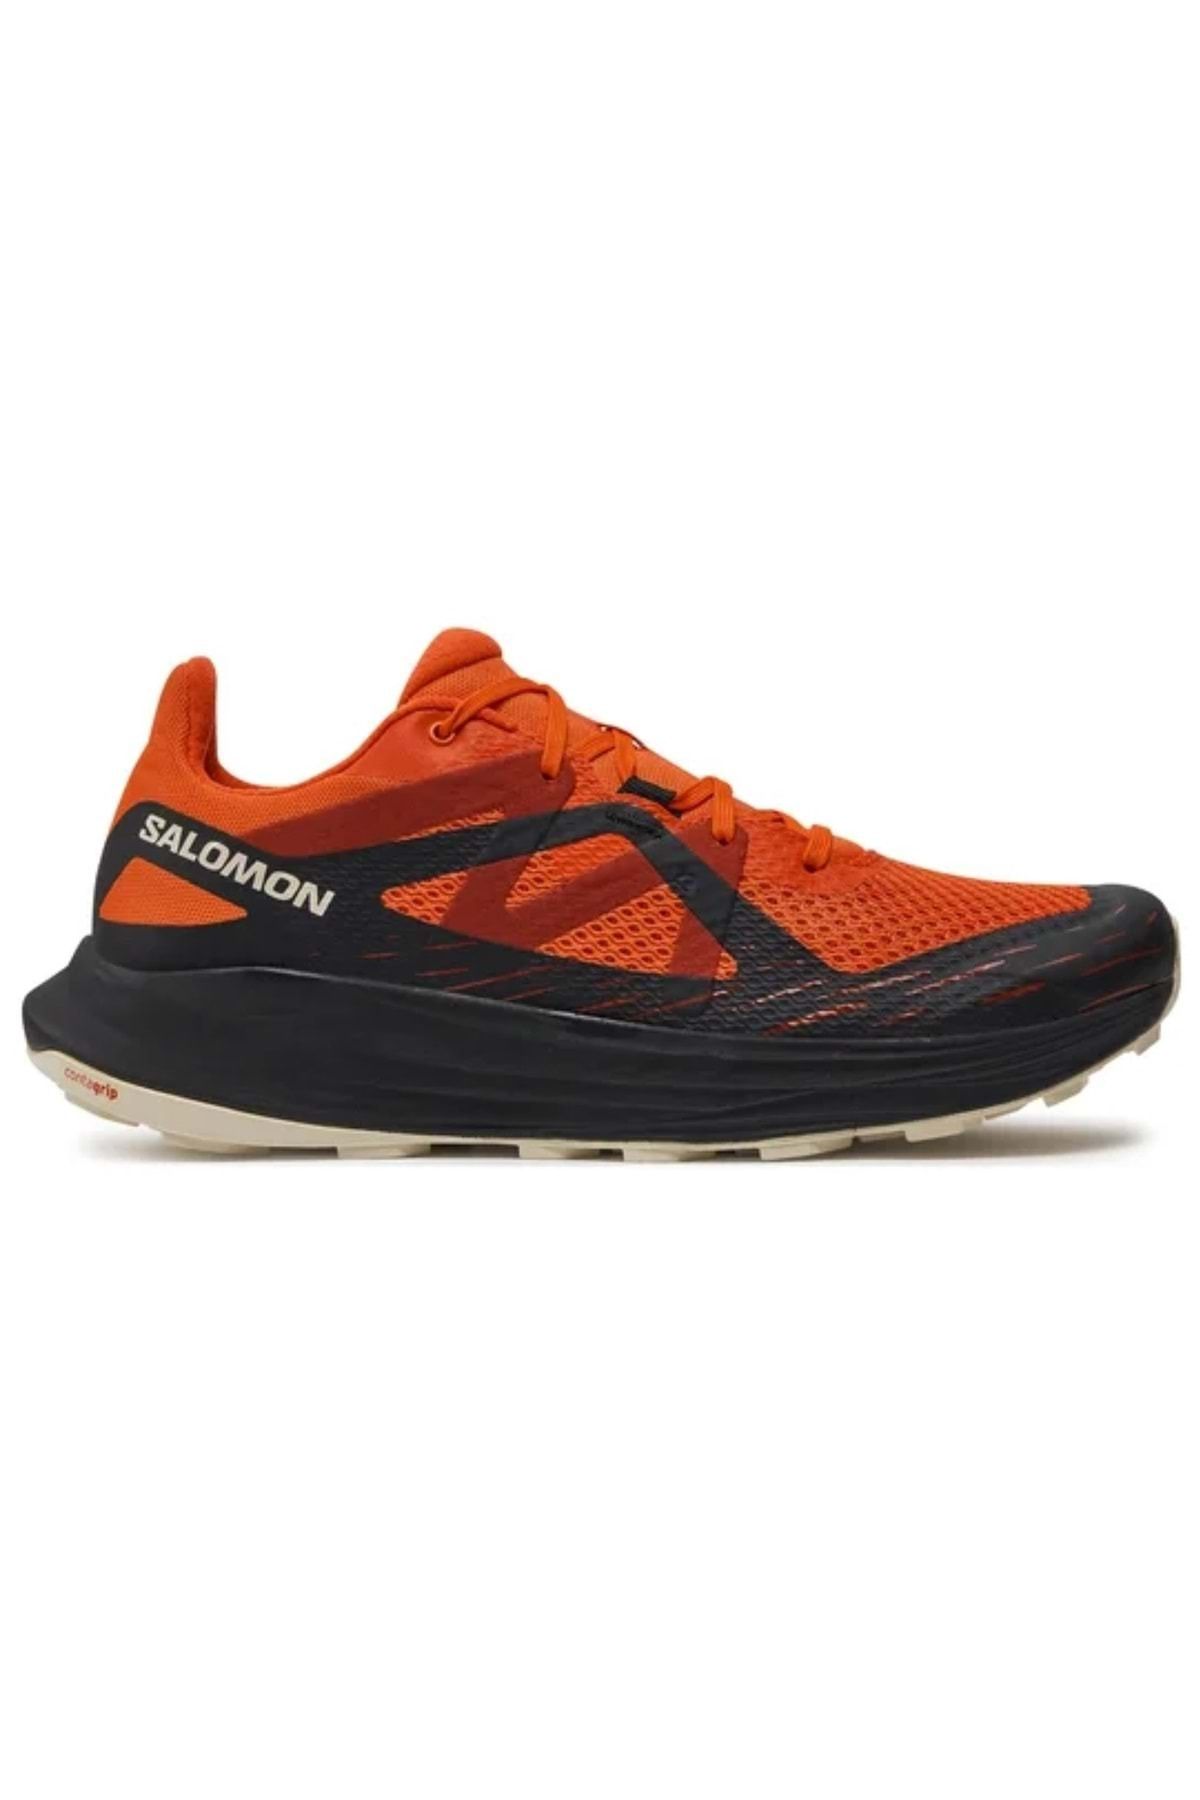 Salomon Ultra Flow L47525300 Patika Koşu Ayakkabısı Erkek Spor Ayakkabı Turuncu